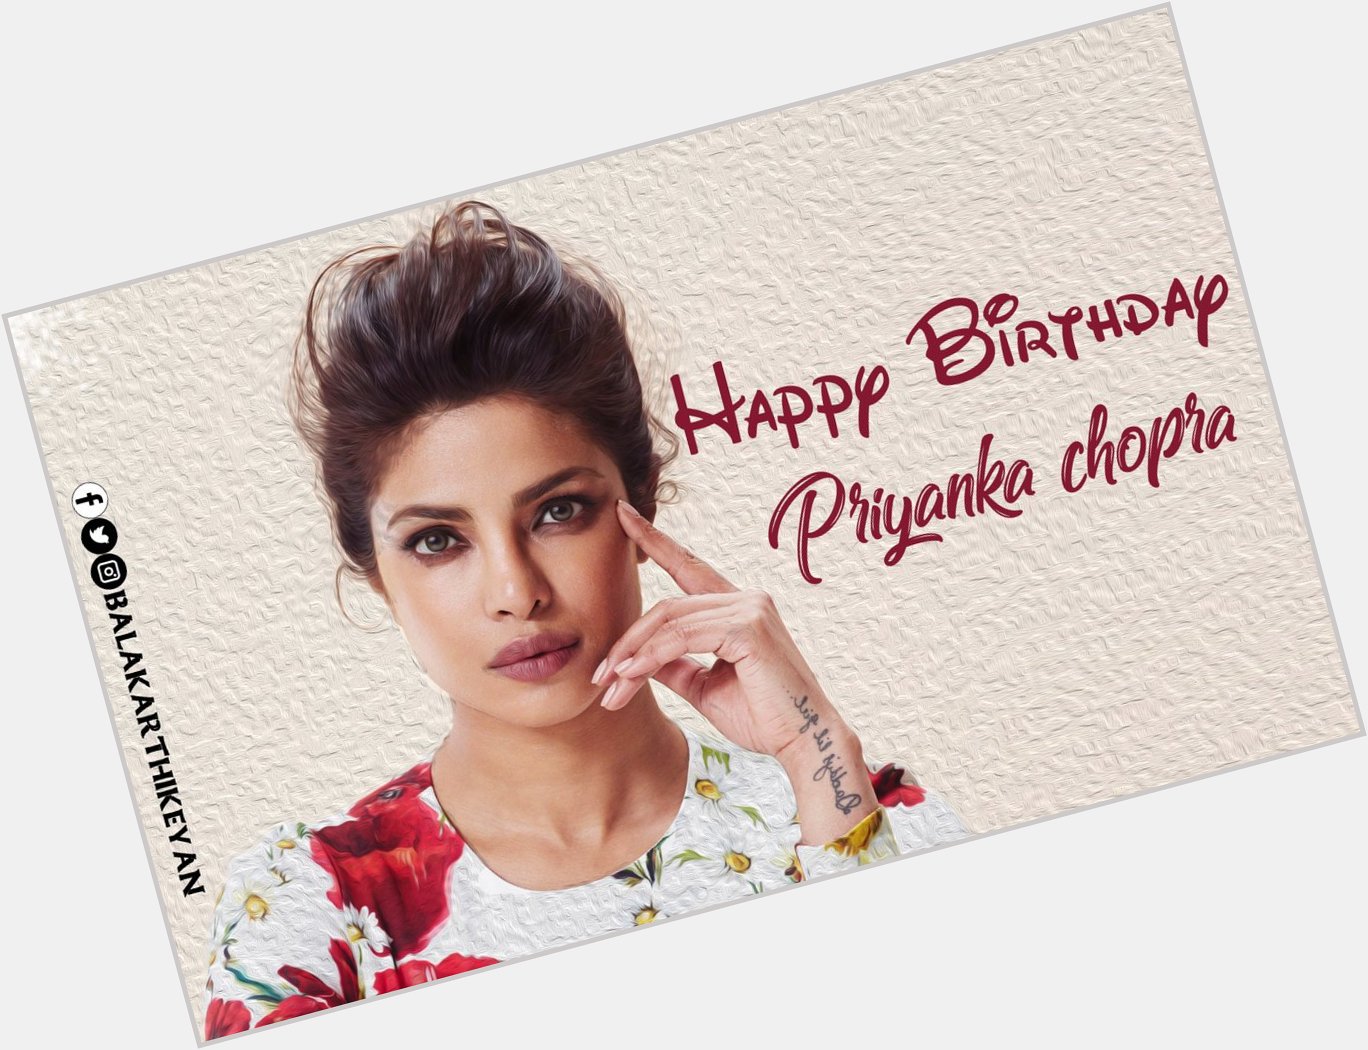 Happy birthday priyanka chopra    